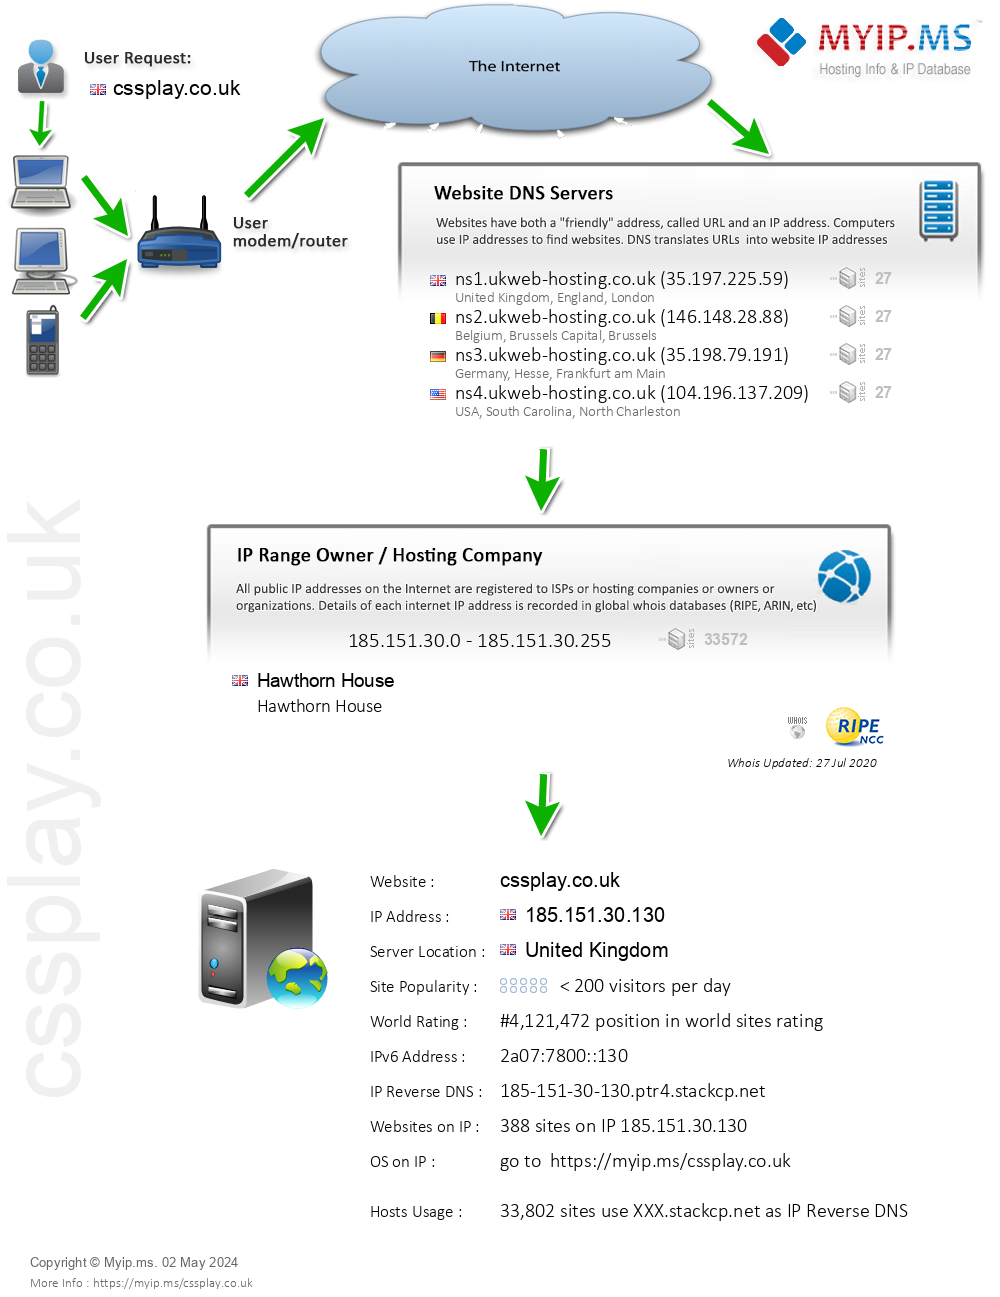 Cssplay.co.uk - Website Hosting Visual IP Diagram